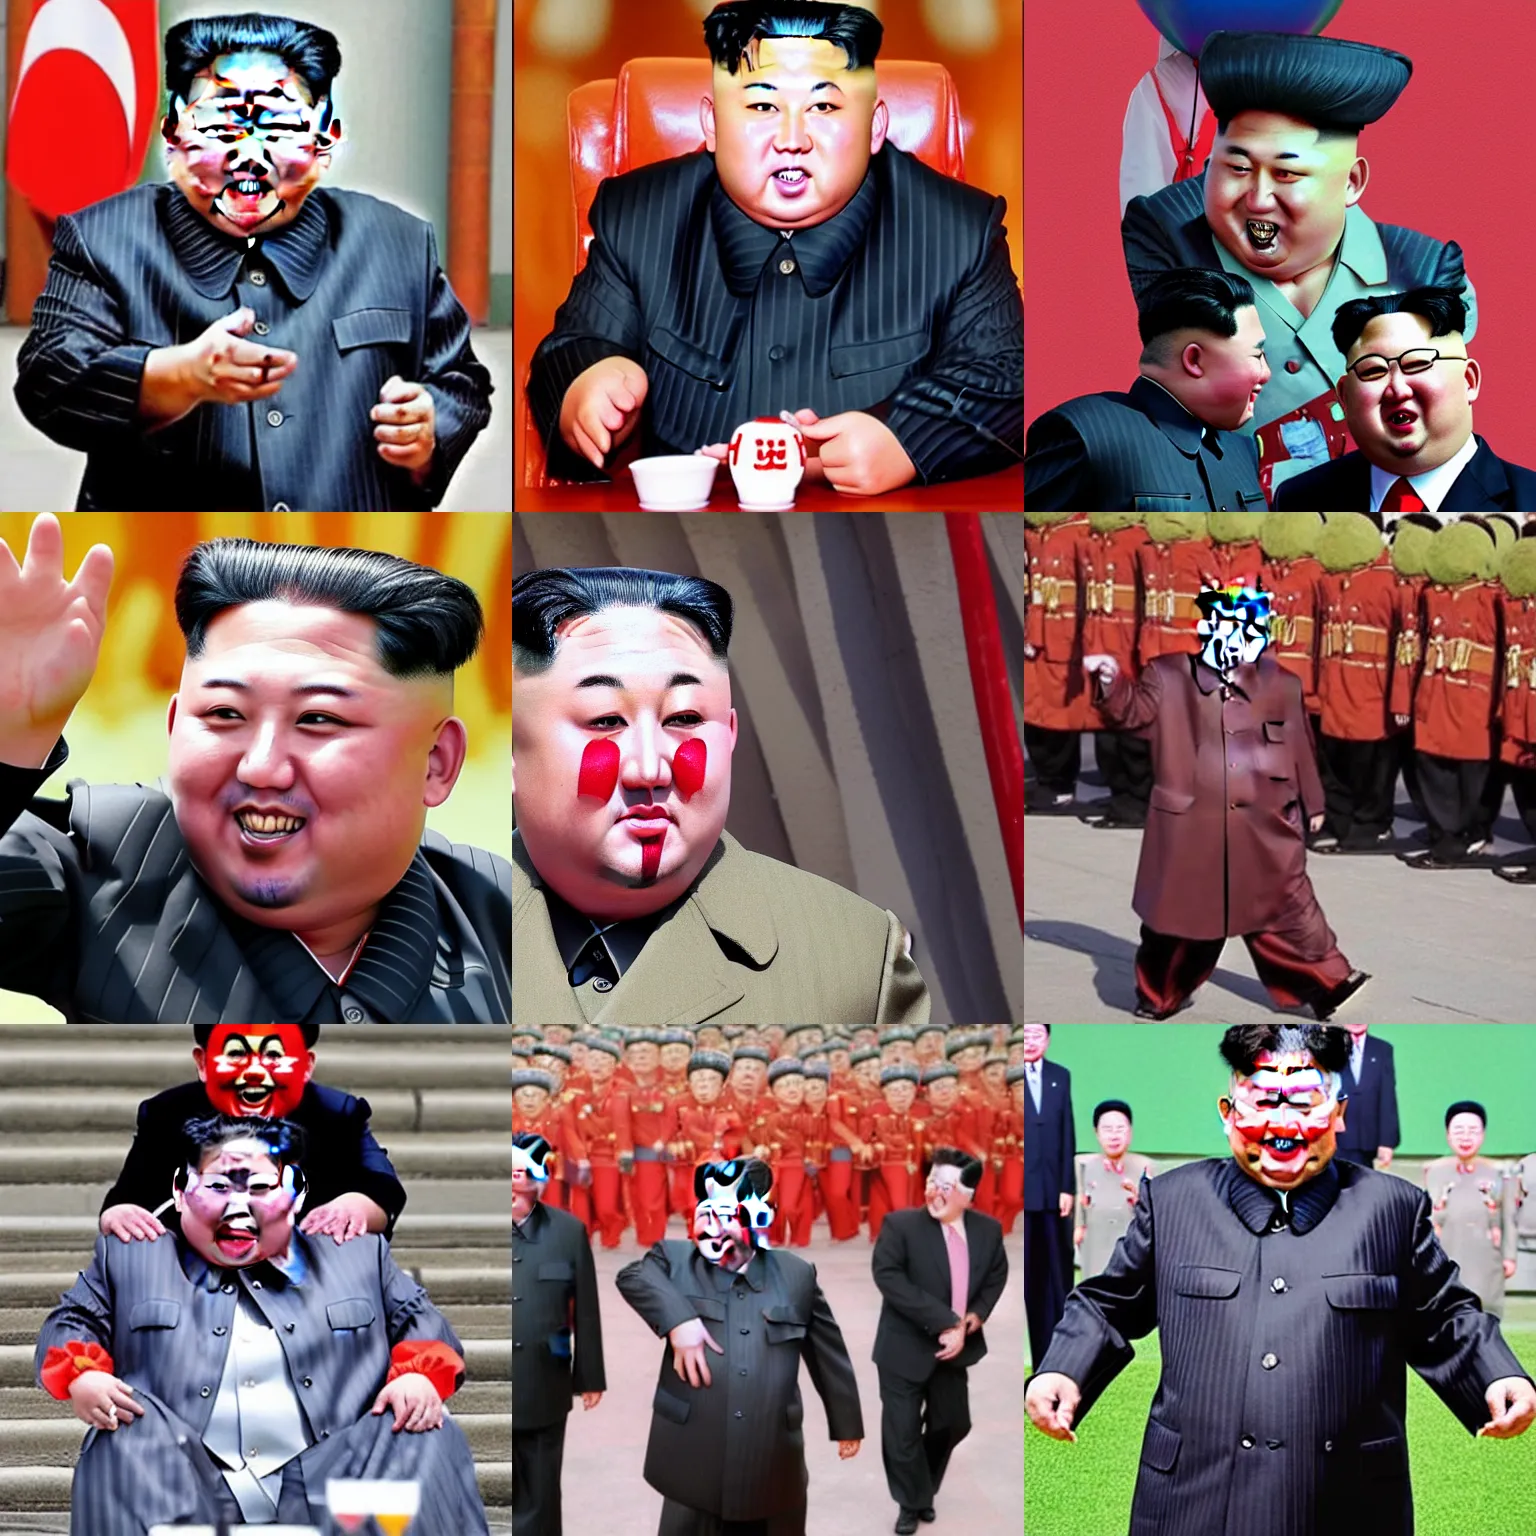 Prompt: Kim Jong-Un as a clown